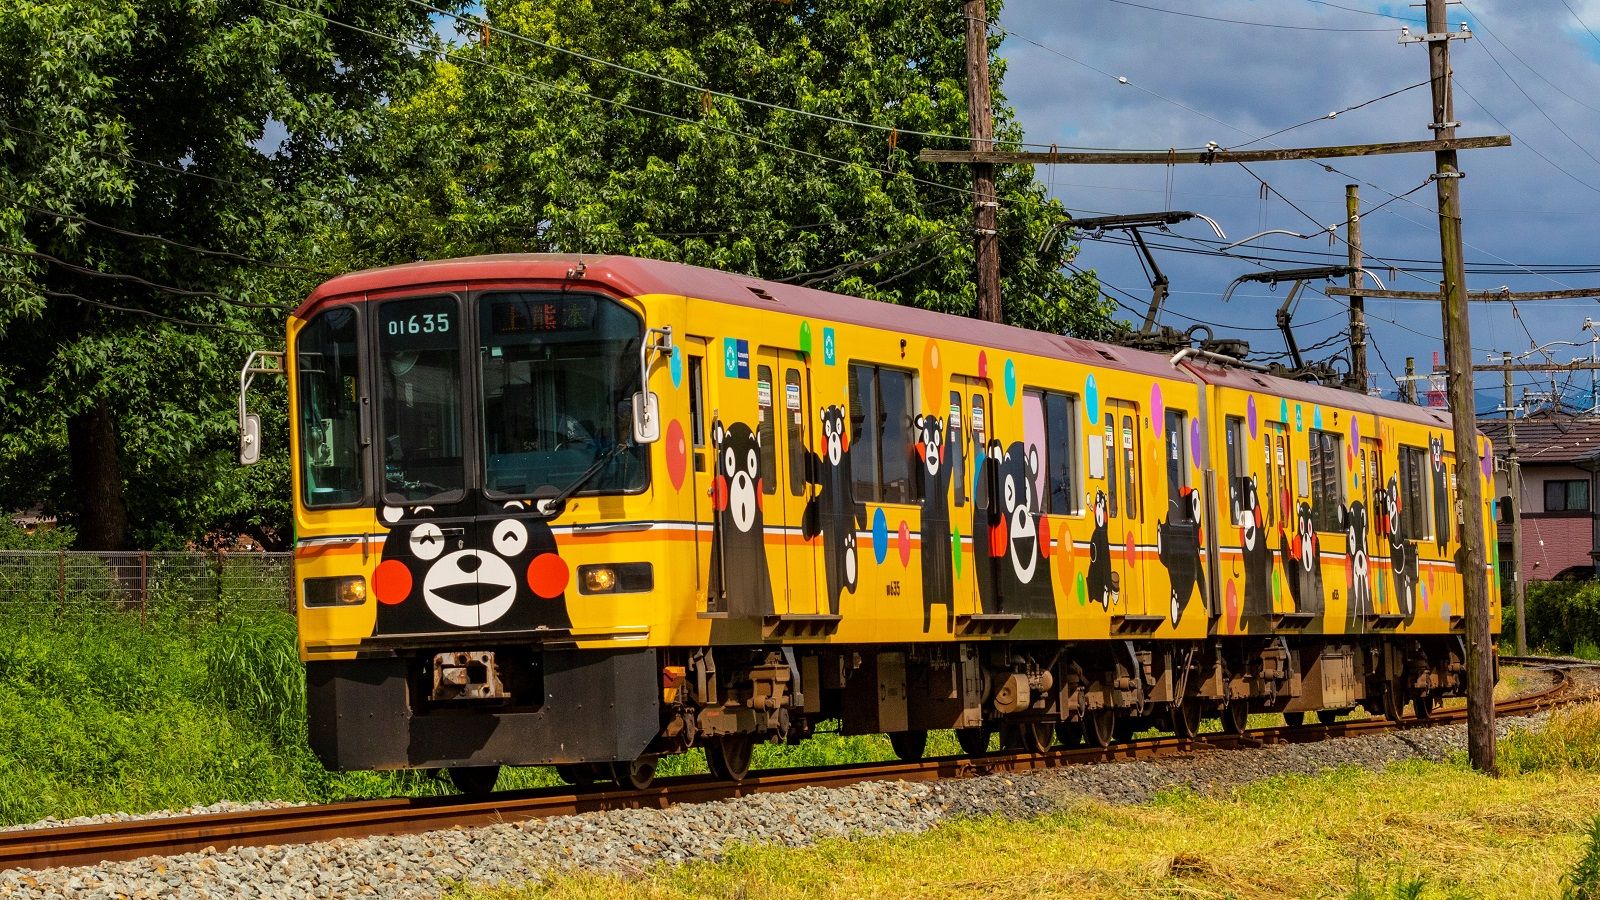 熊本電鉄 くまモン電車 の効果は絶大だった ローカル線 公共交通 東洋経済オンライン 社会をよくする経済ニュース